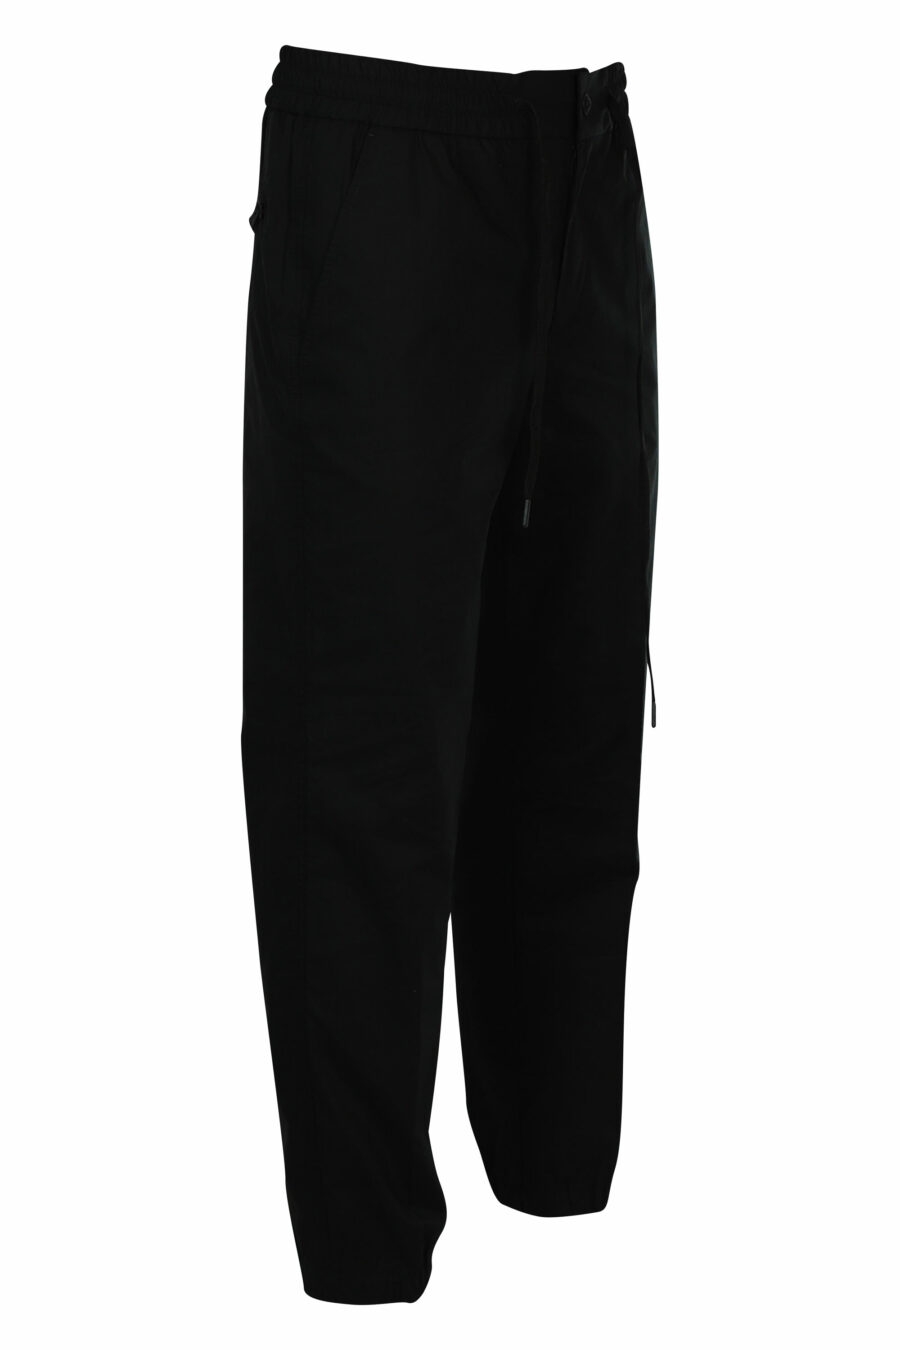 Pantalón negro pesquero con logo - 8052019219876 2